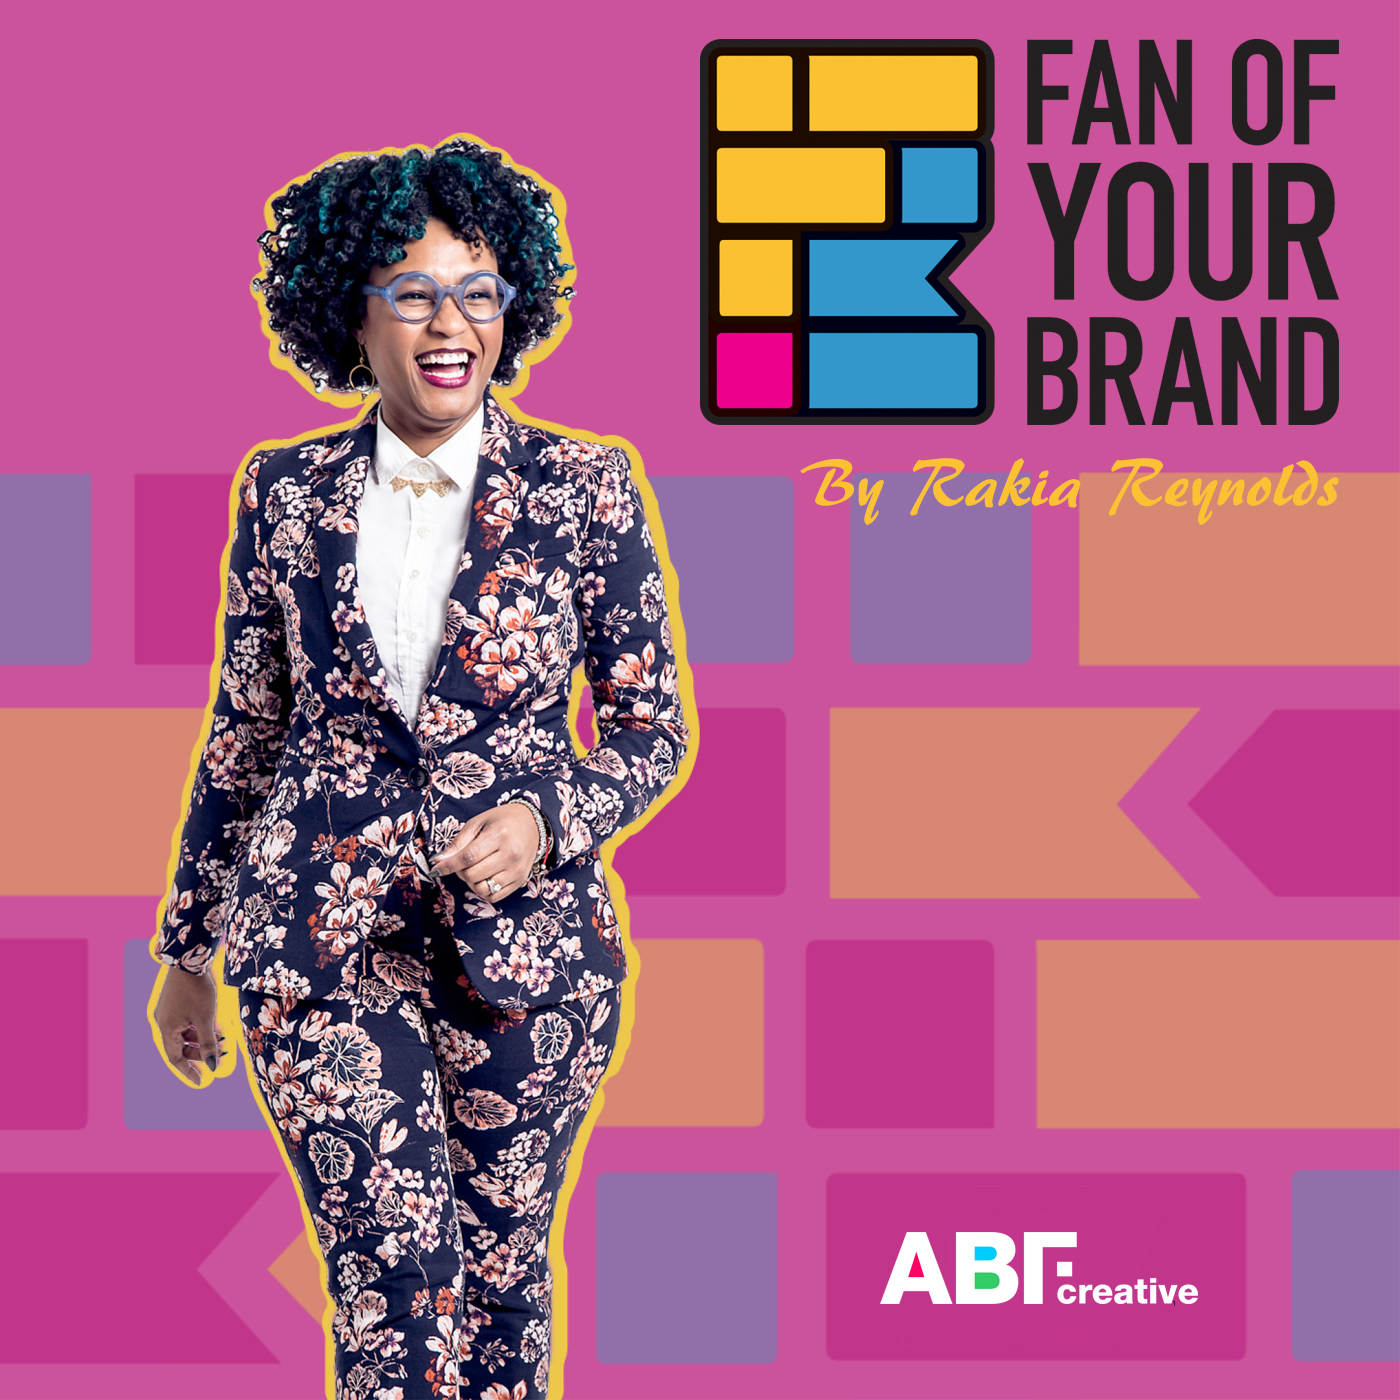 Fan of Your Brand by Rakia Reynolds